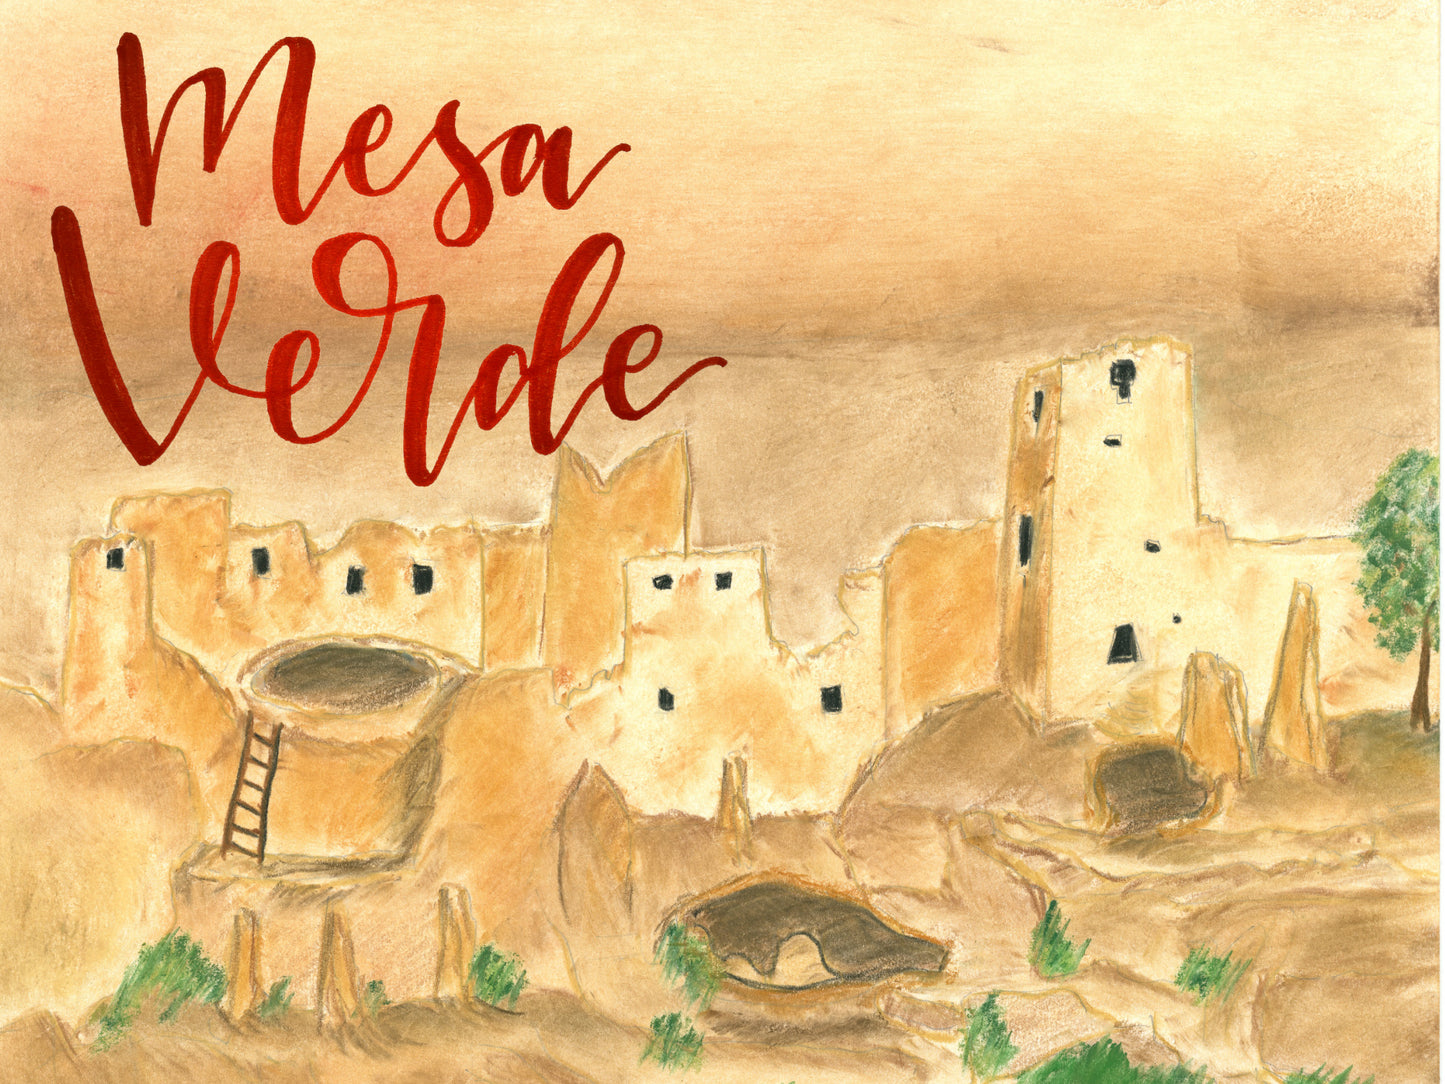 Mesa Verde National Park Letter: Digital Download